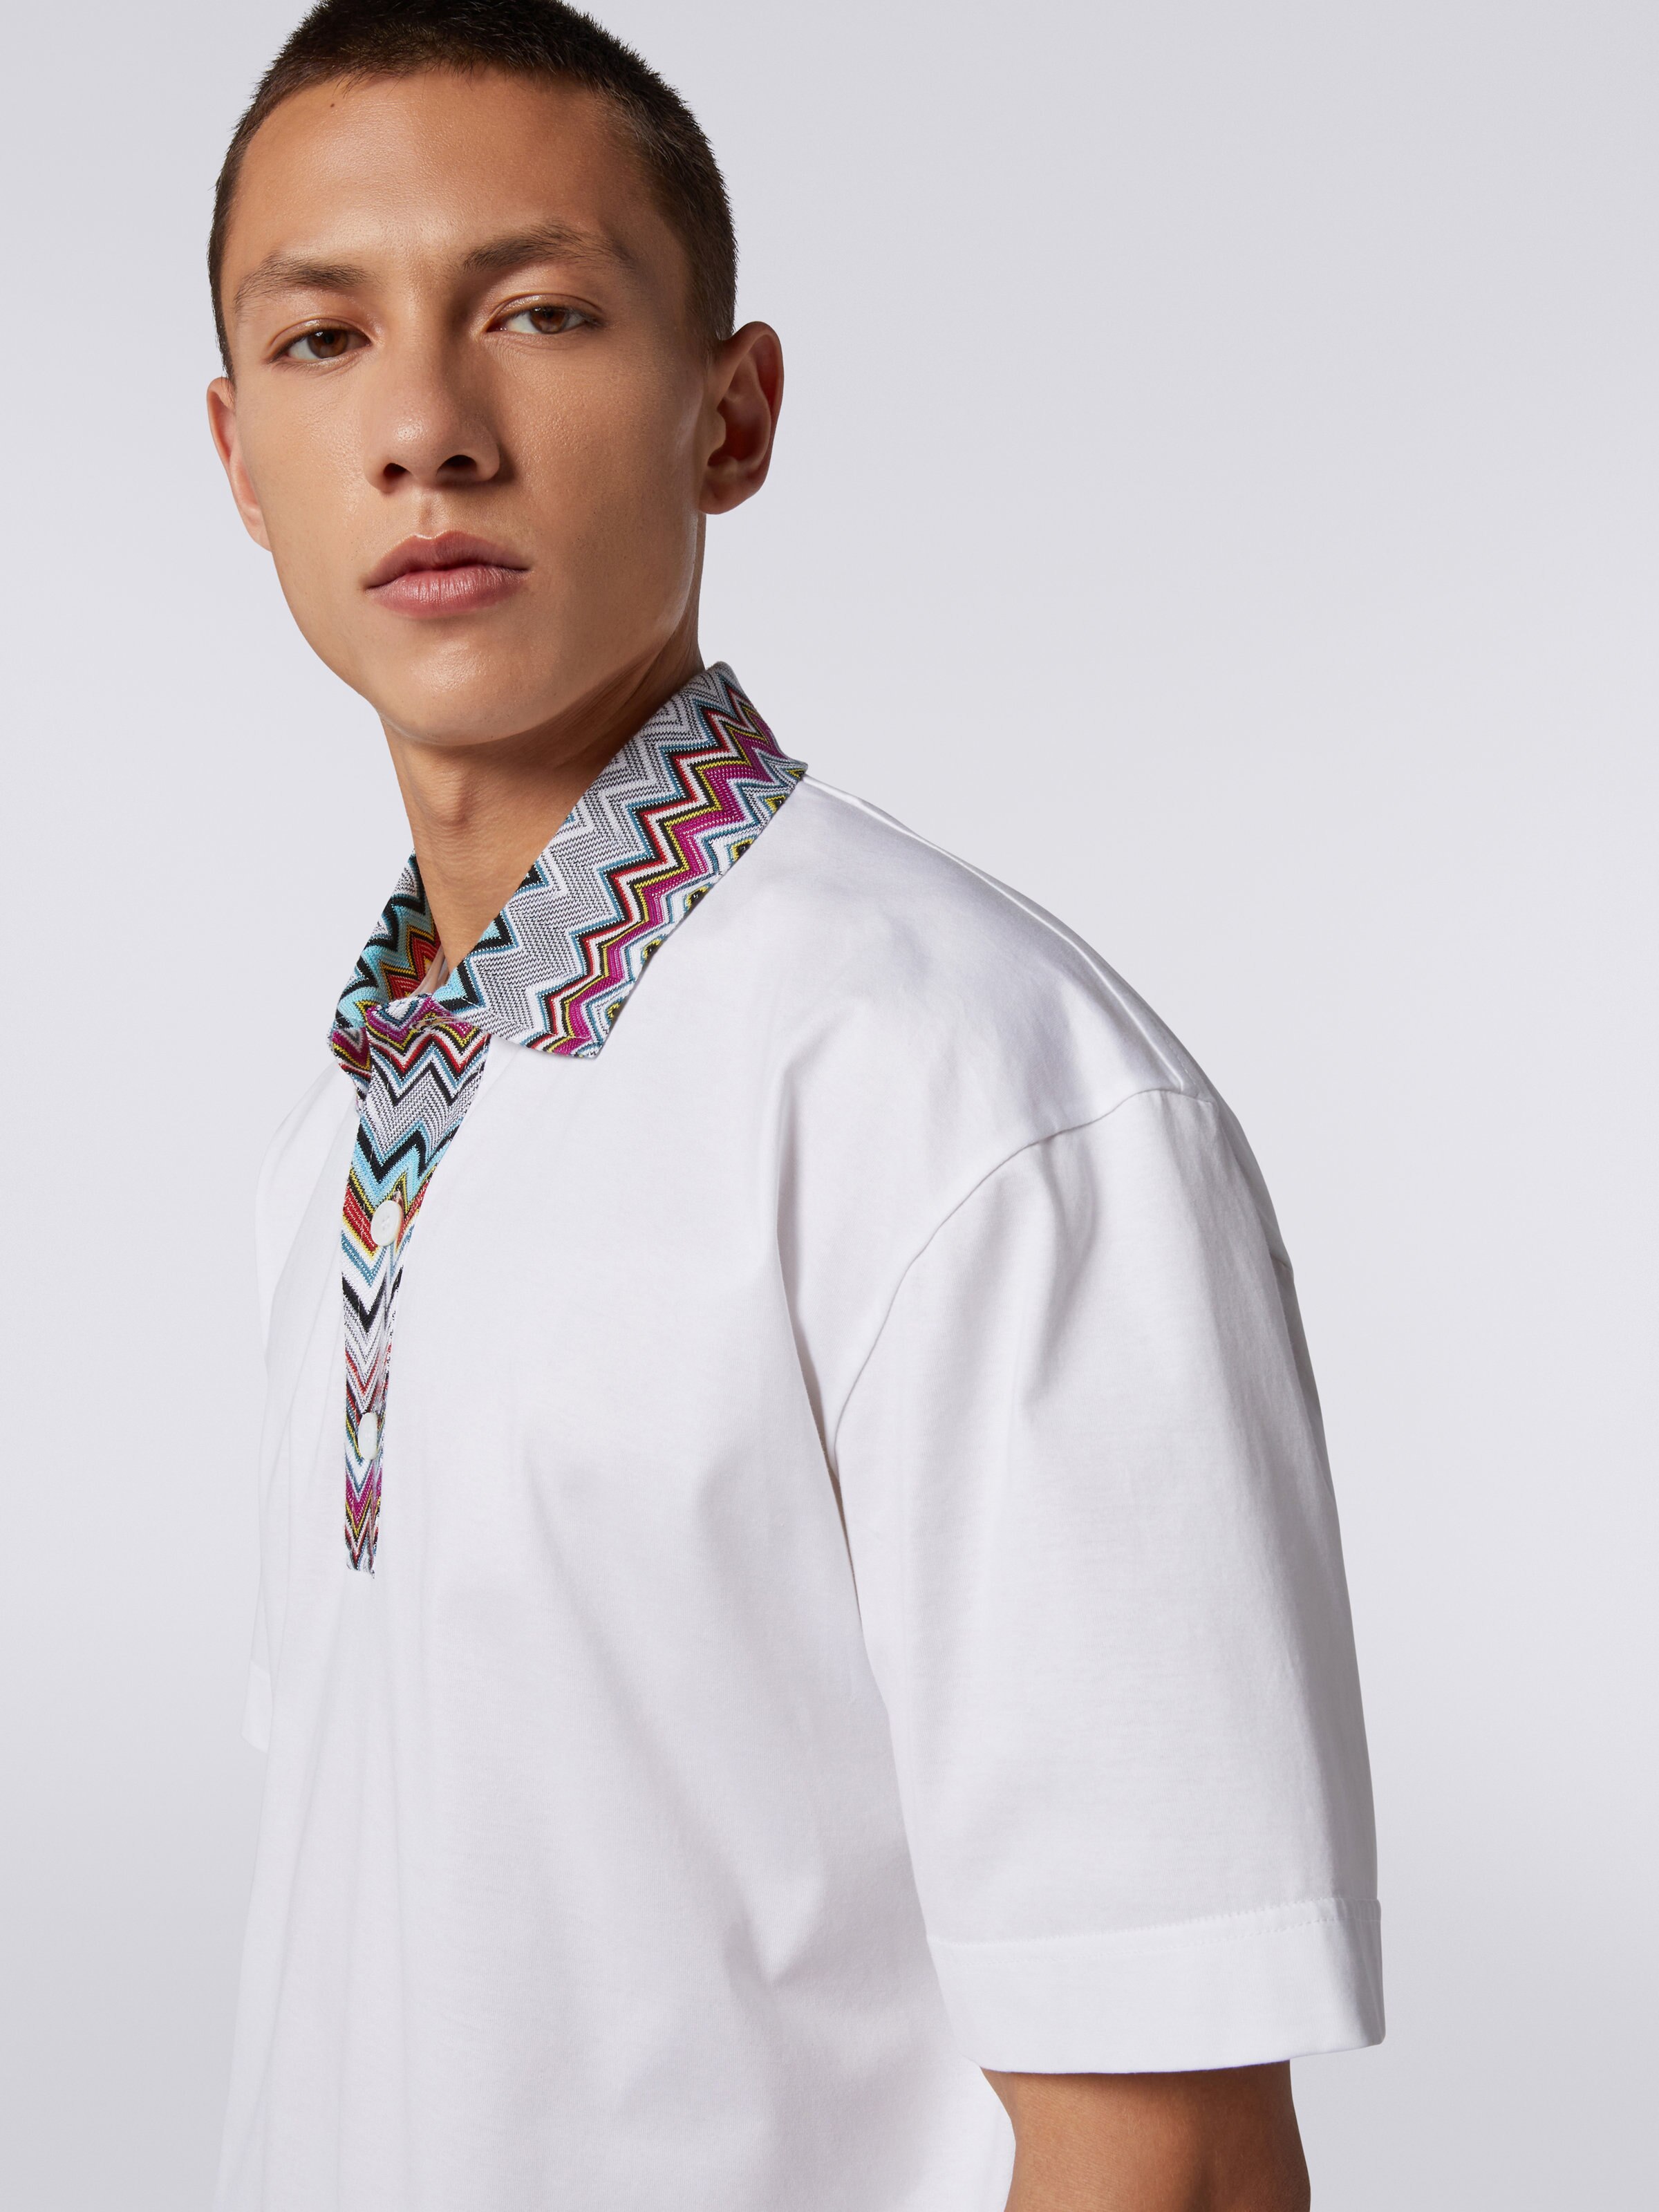 Cotton polo shirt with dégradé chevron pattern, White  - 4